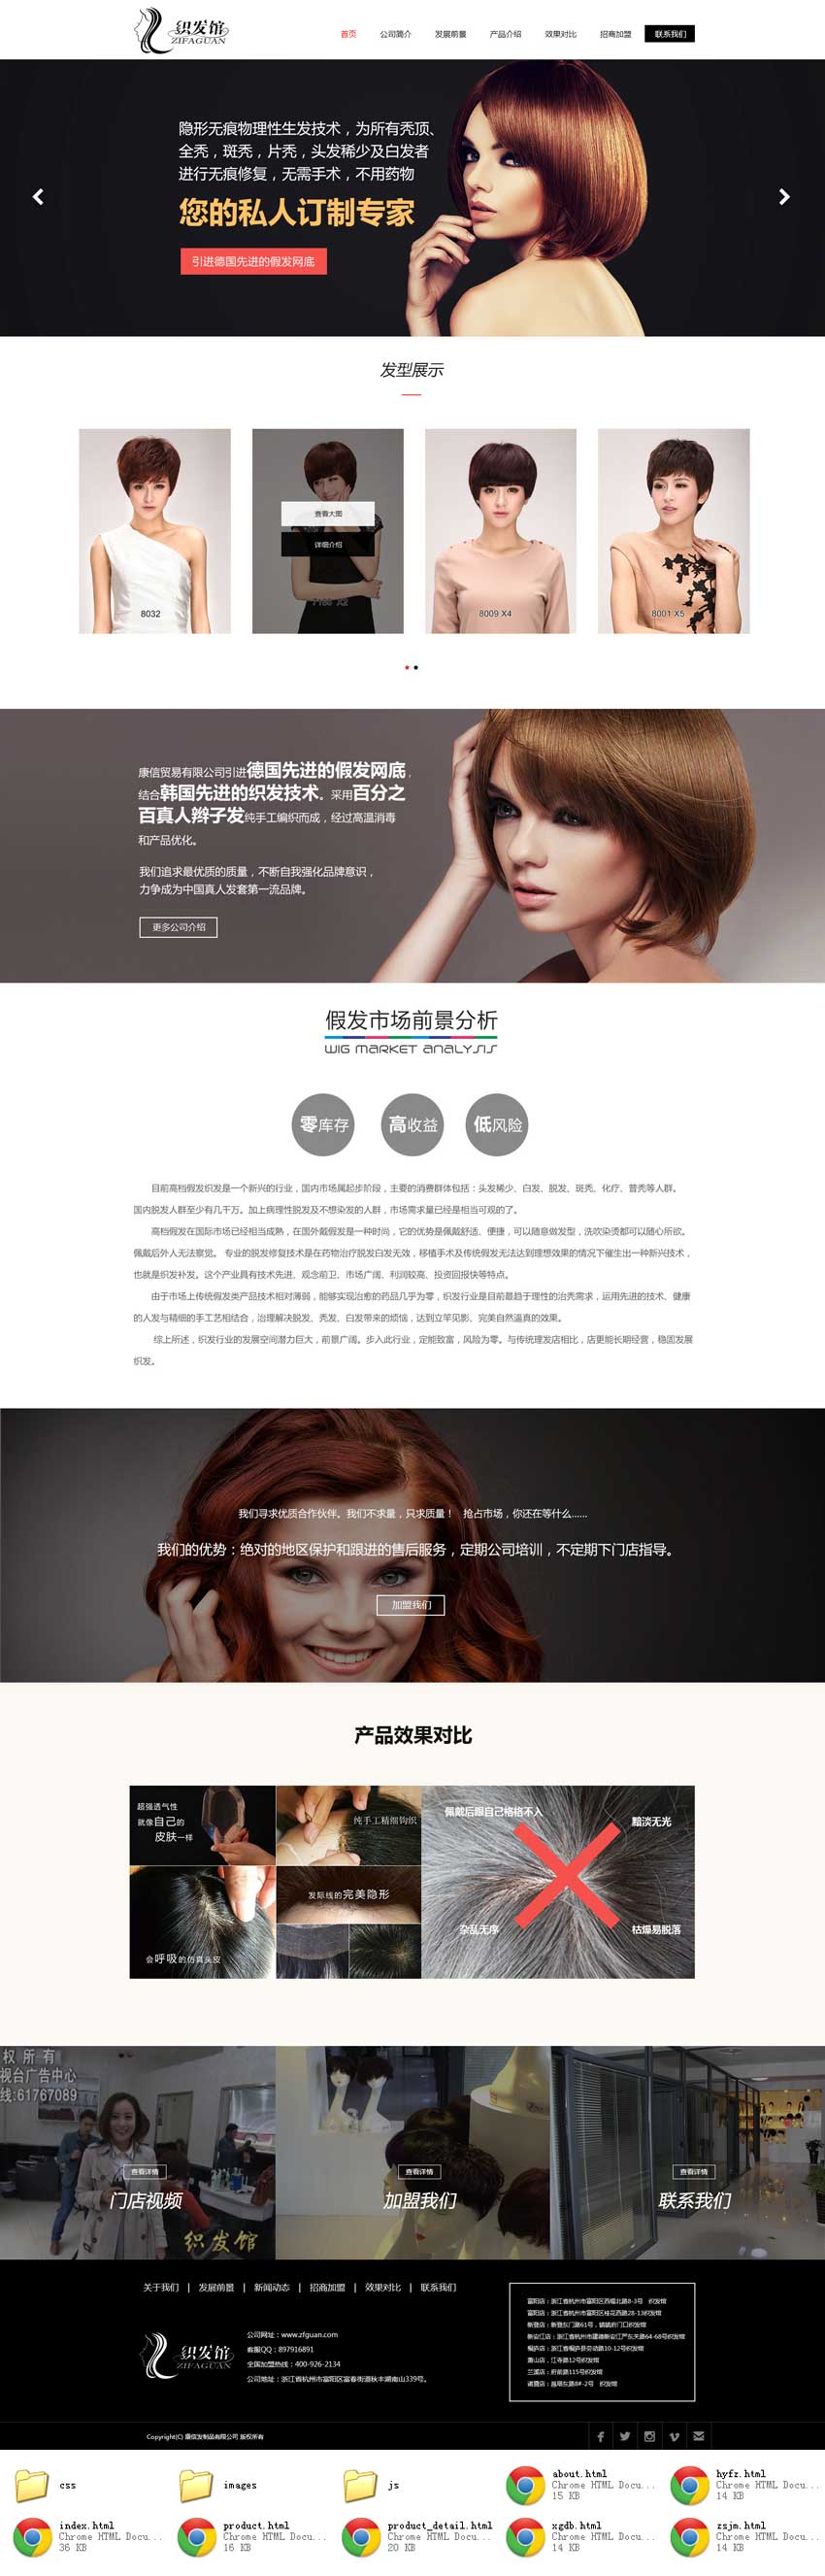 黑色宽屏的发型设计理发店网站模板html整站